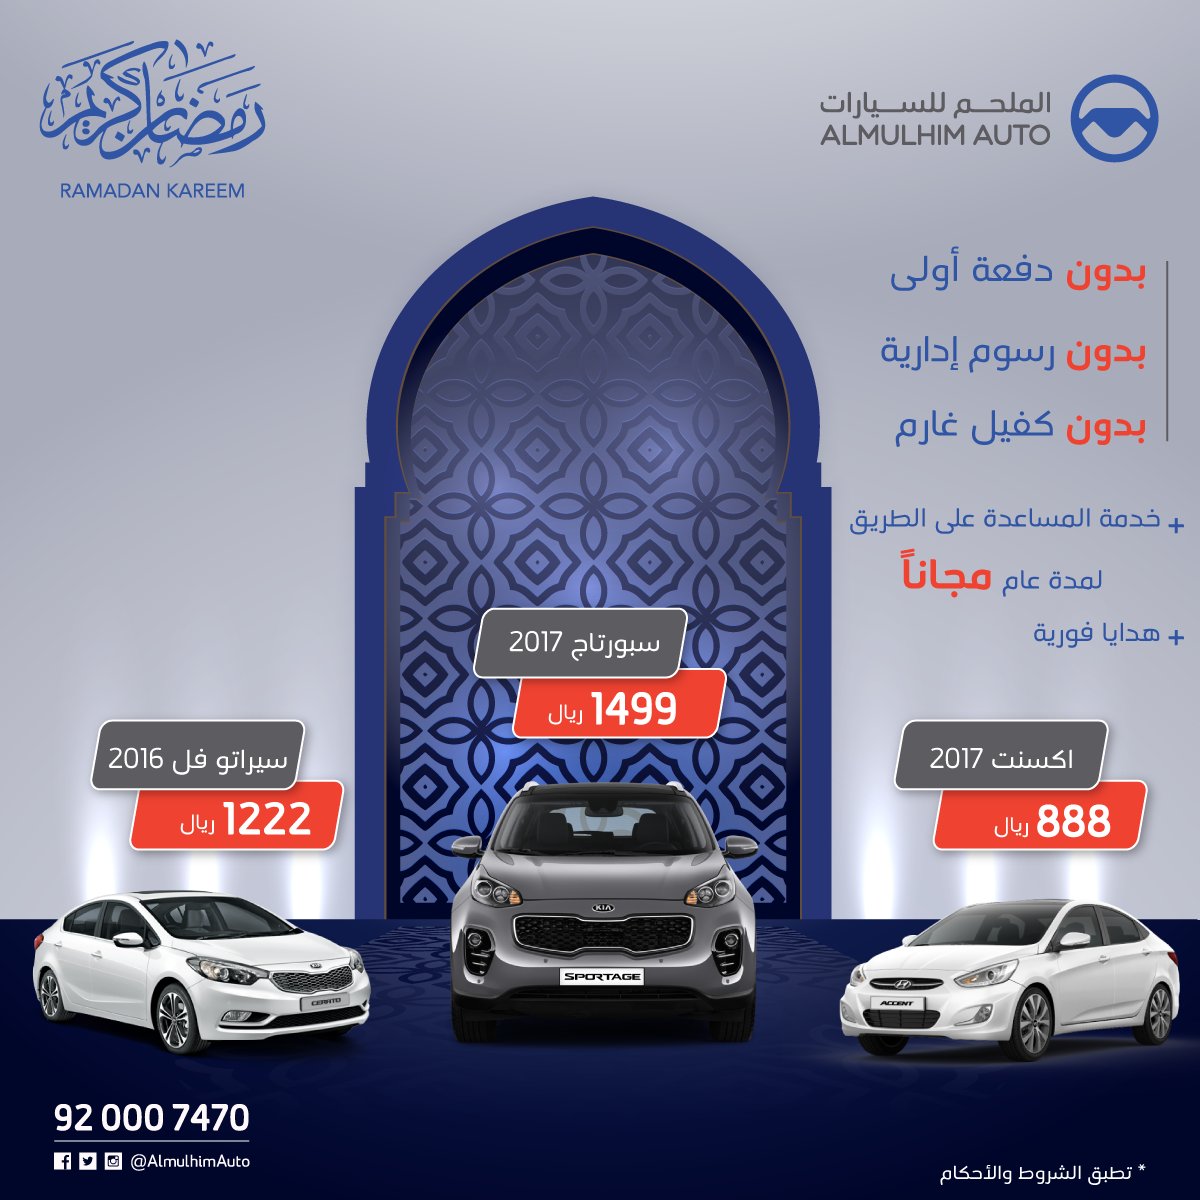 جميع عروض السيارات في شهر رمضان المبارك 2017 هذا العام 1438هـ 26